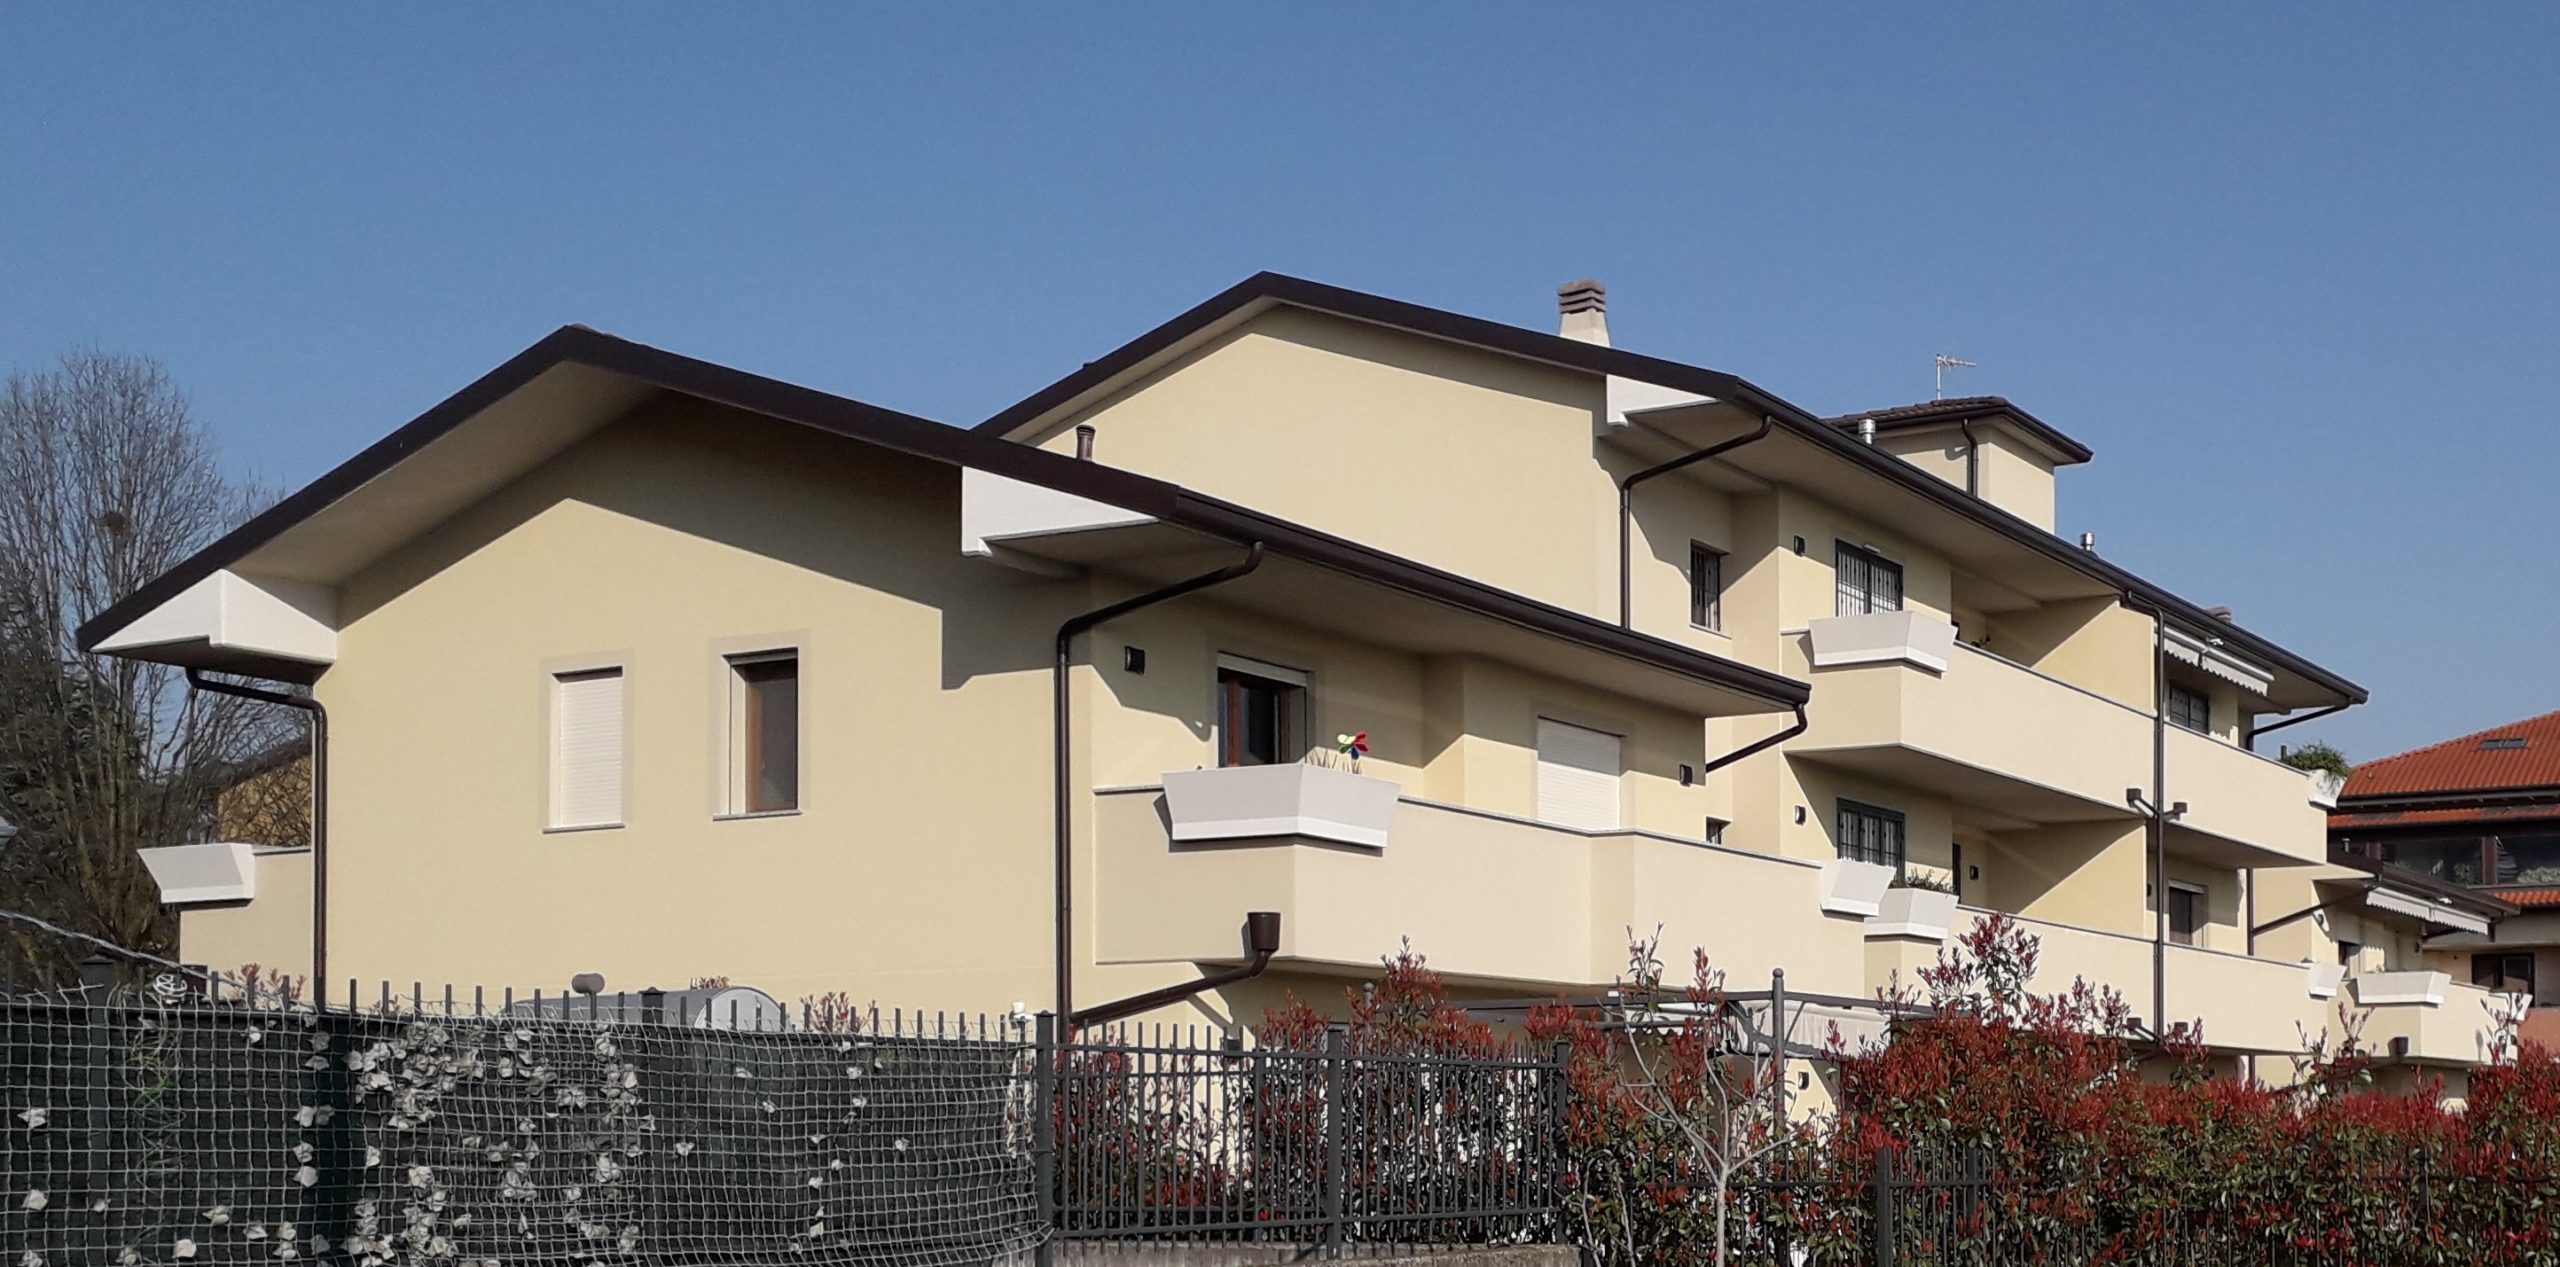 2017  Cassina de’ Pecchi  (Milano) Realizzazione edificio in Via Torrente Molgora: 11 unità residenziali